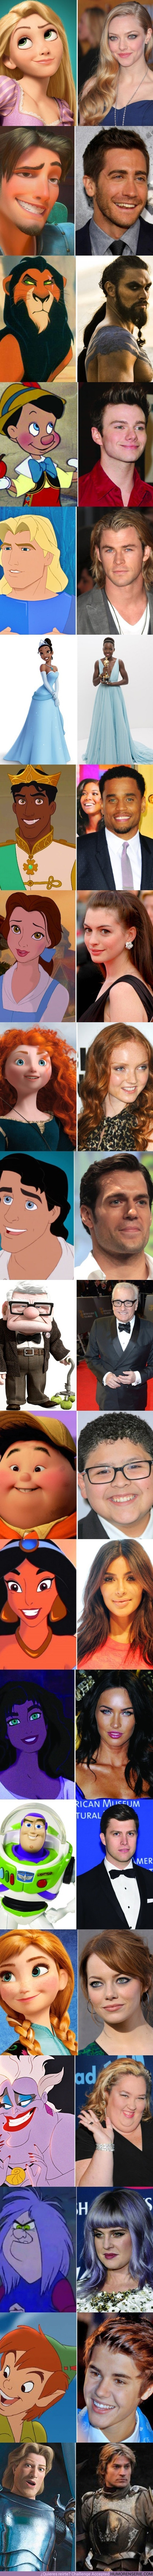 9727 - 20 Actores que podrían aparecer en una película de Disney/Pixar